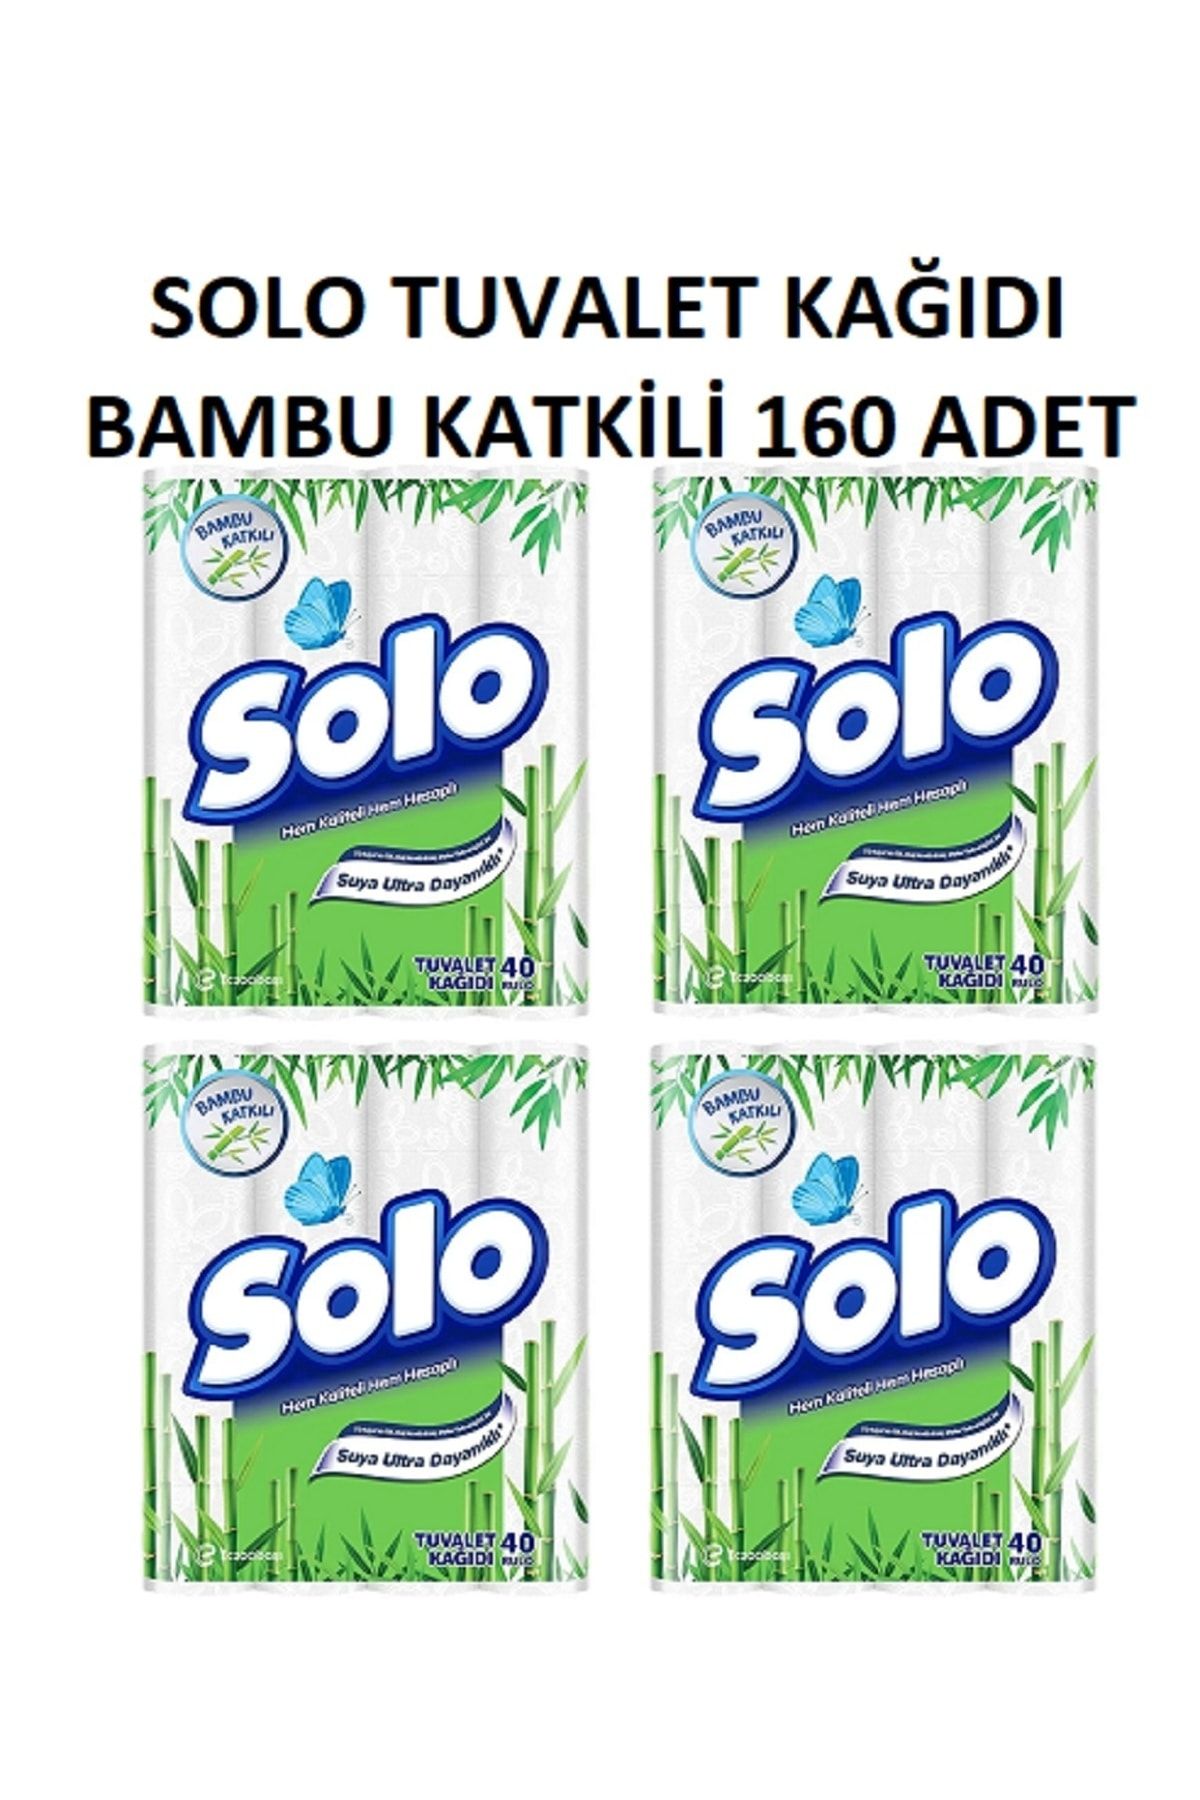 Solo Tuvalet Kağıdı Bambu Katkılı 160 Adet ( 40*4adet )